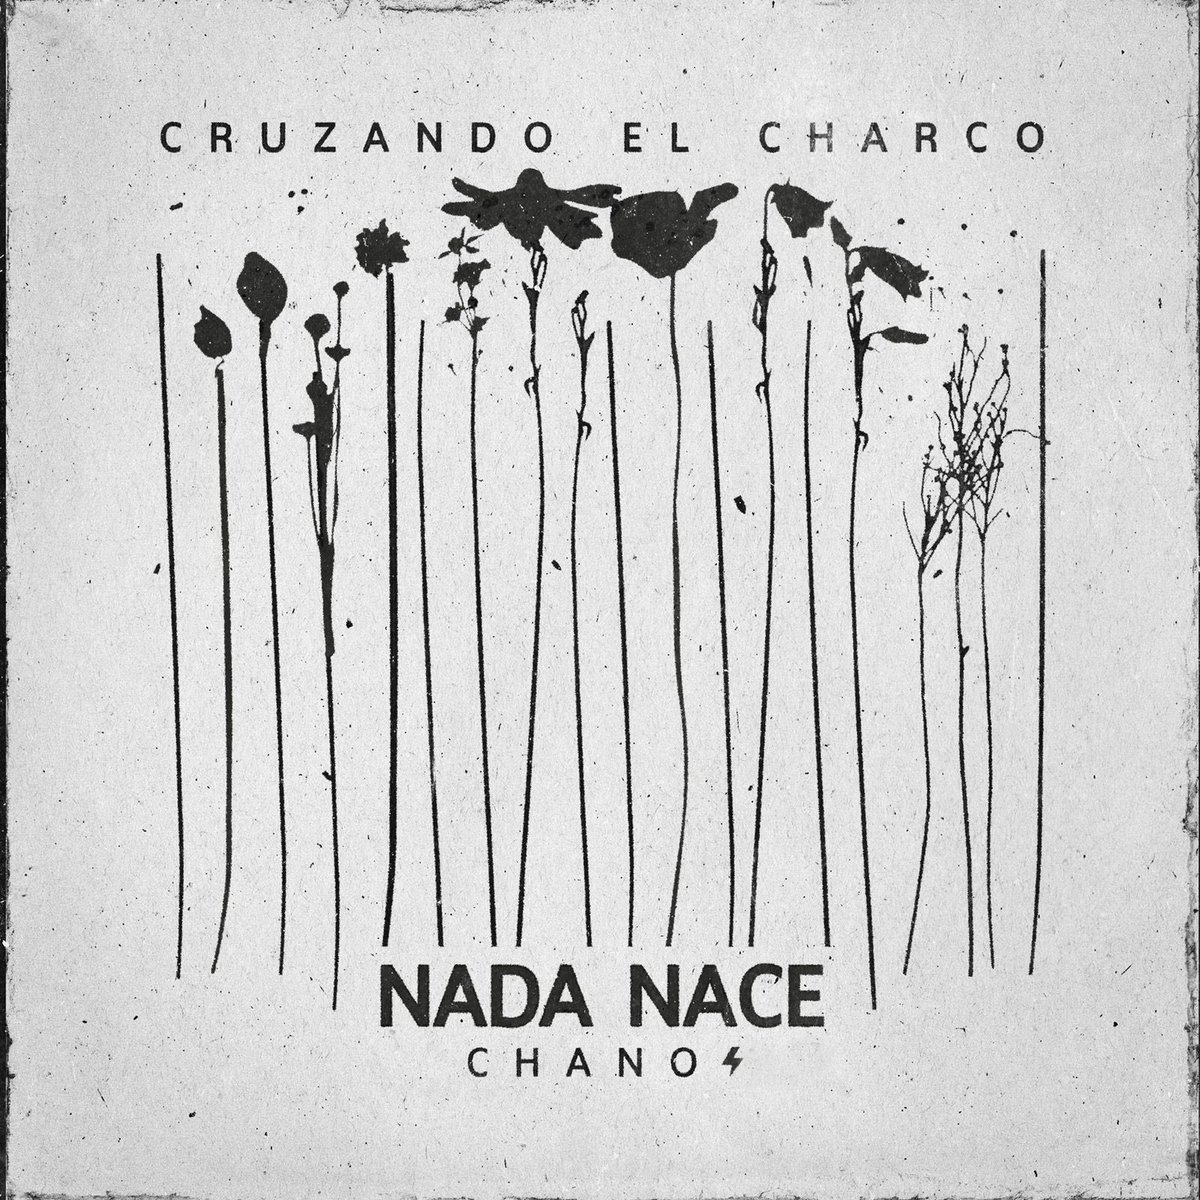 Ya esta disponible “Nada nace”, la nueva canción de la banda junto a Chano!⚡️ El primer adelanto del disco ya está disponible en todas las plataformas! 🌹